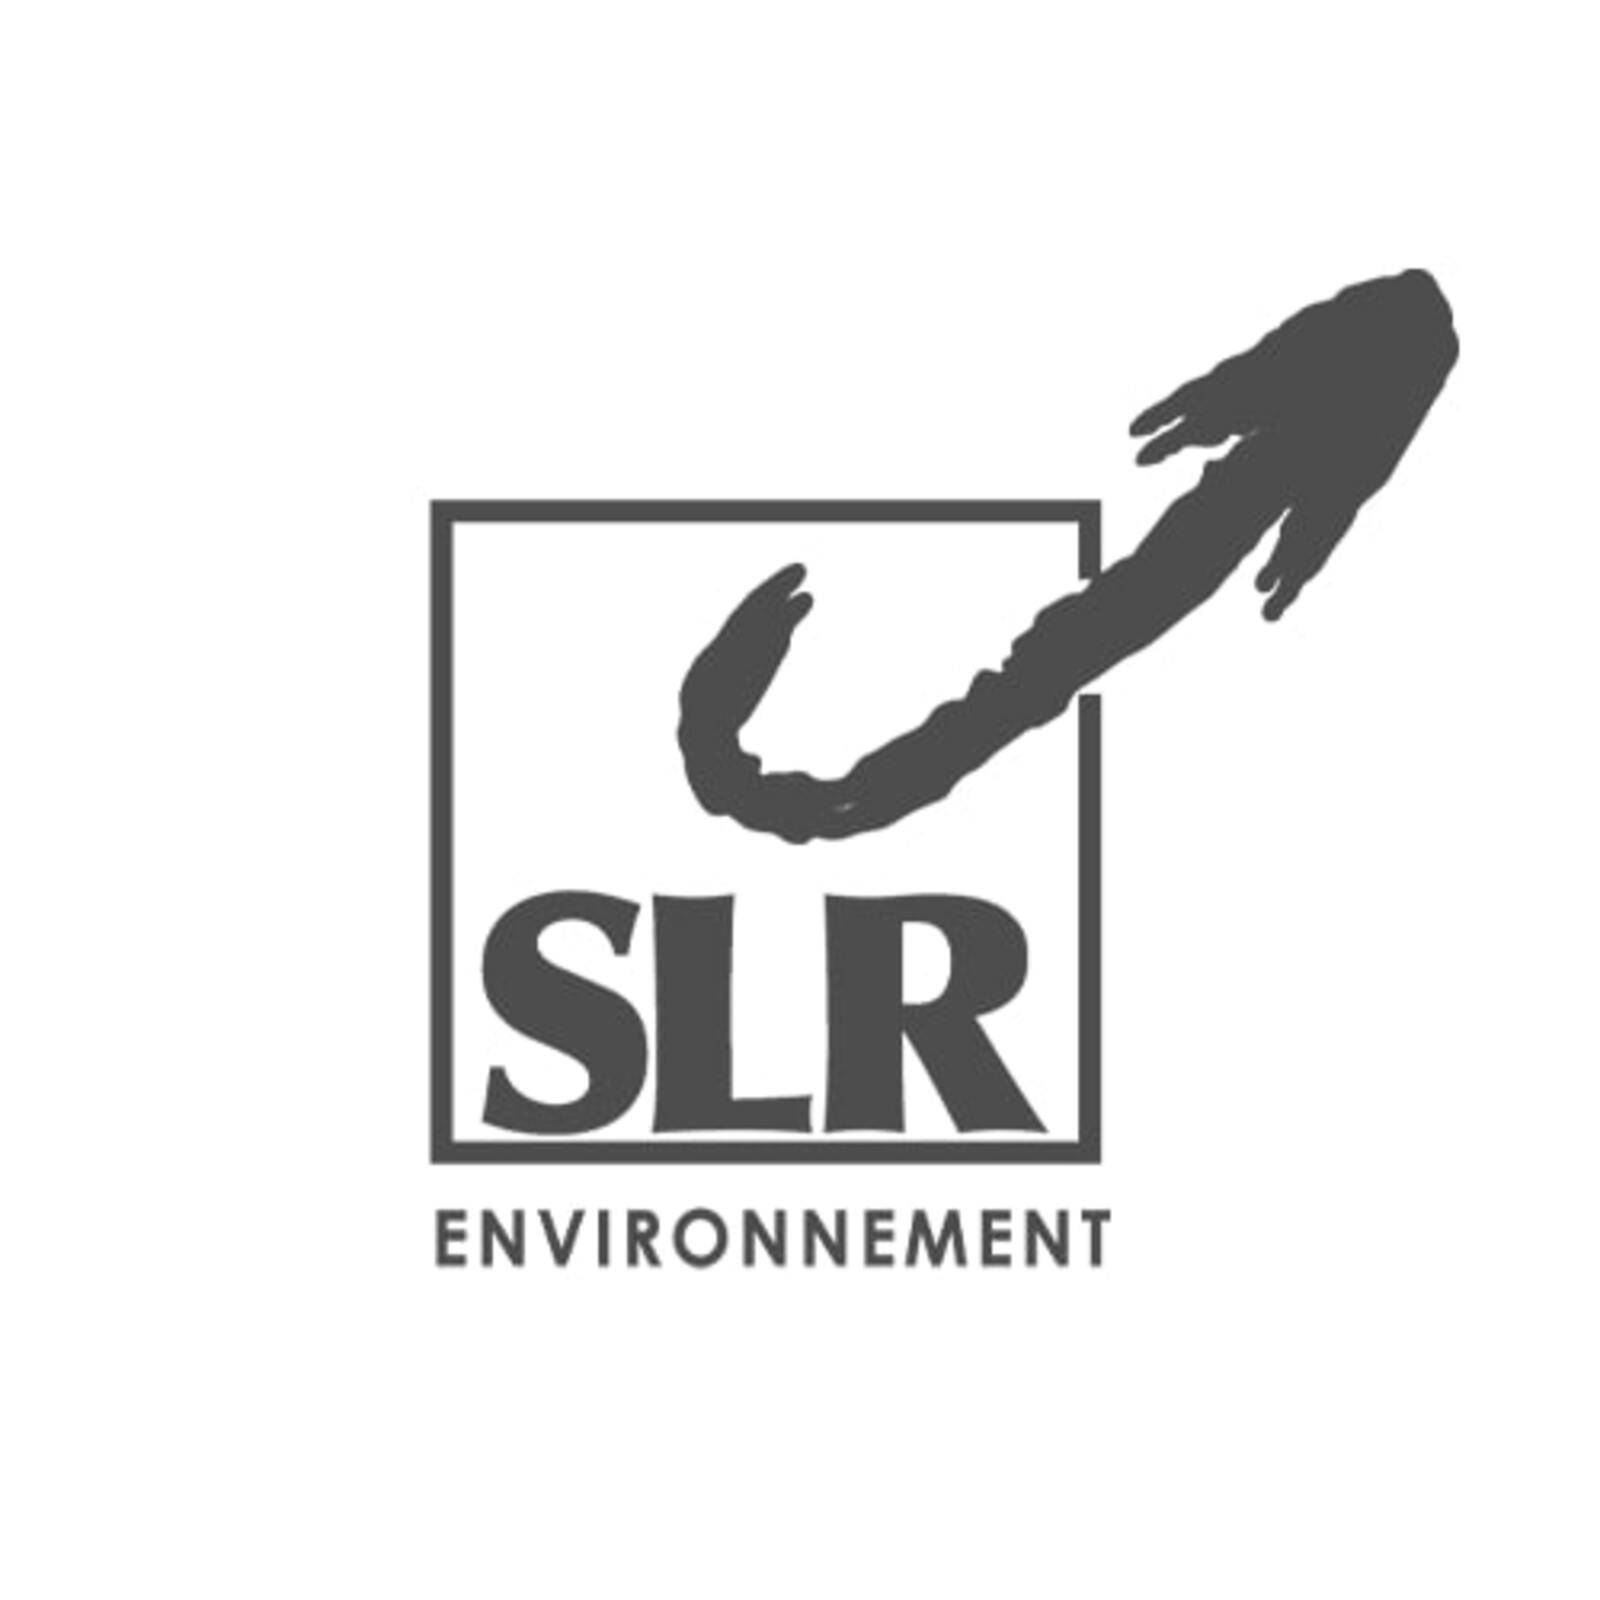 SLR Environnement